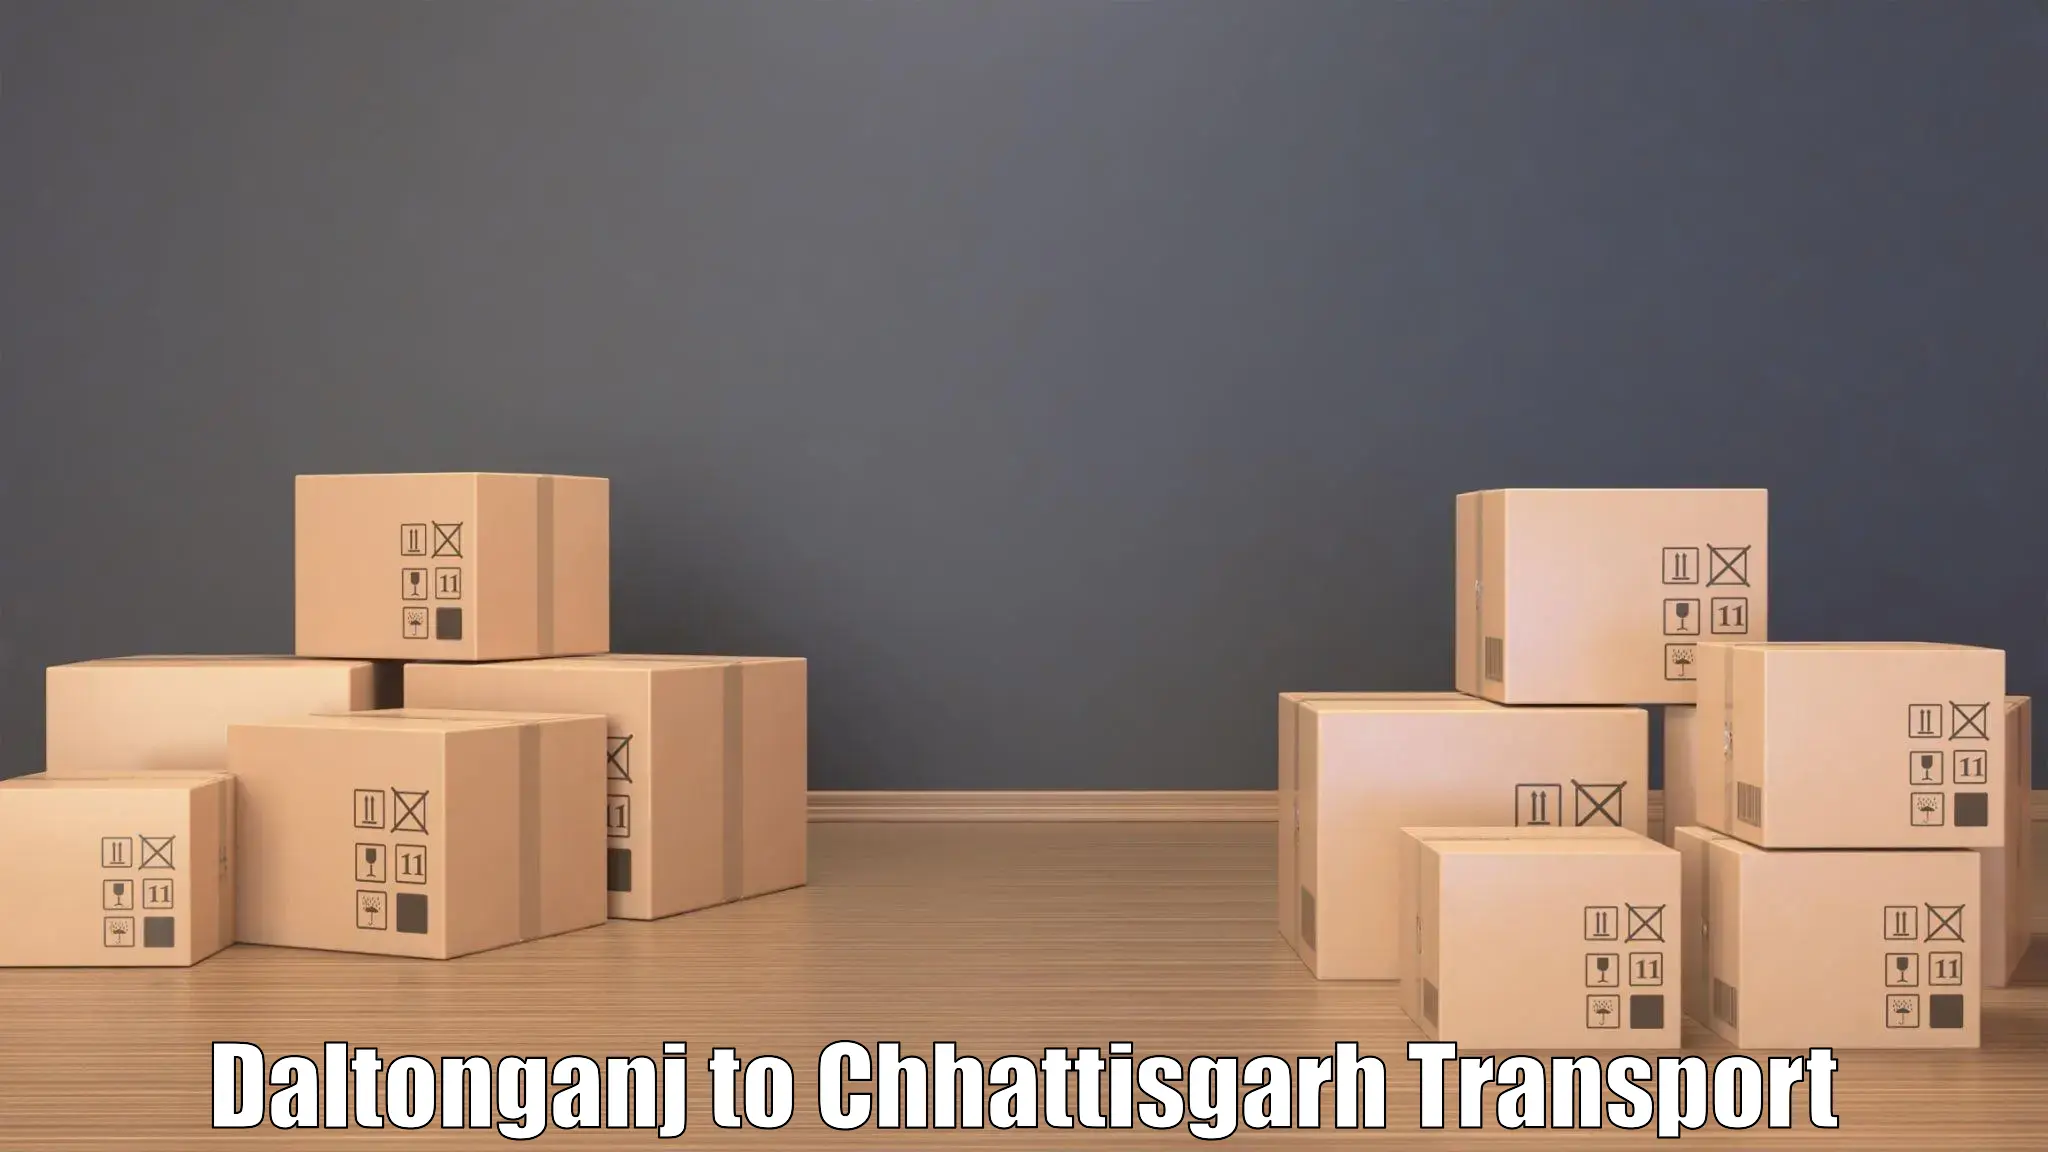 Shipping partner Daltonganj to Chhattisgarh